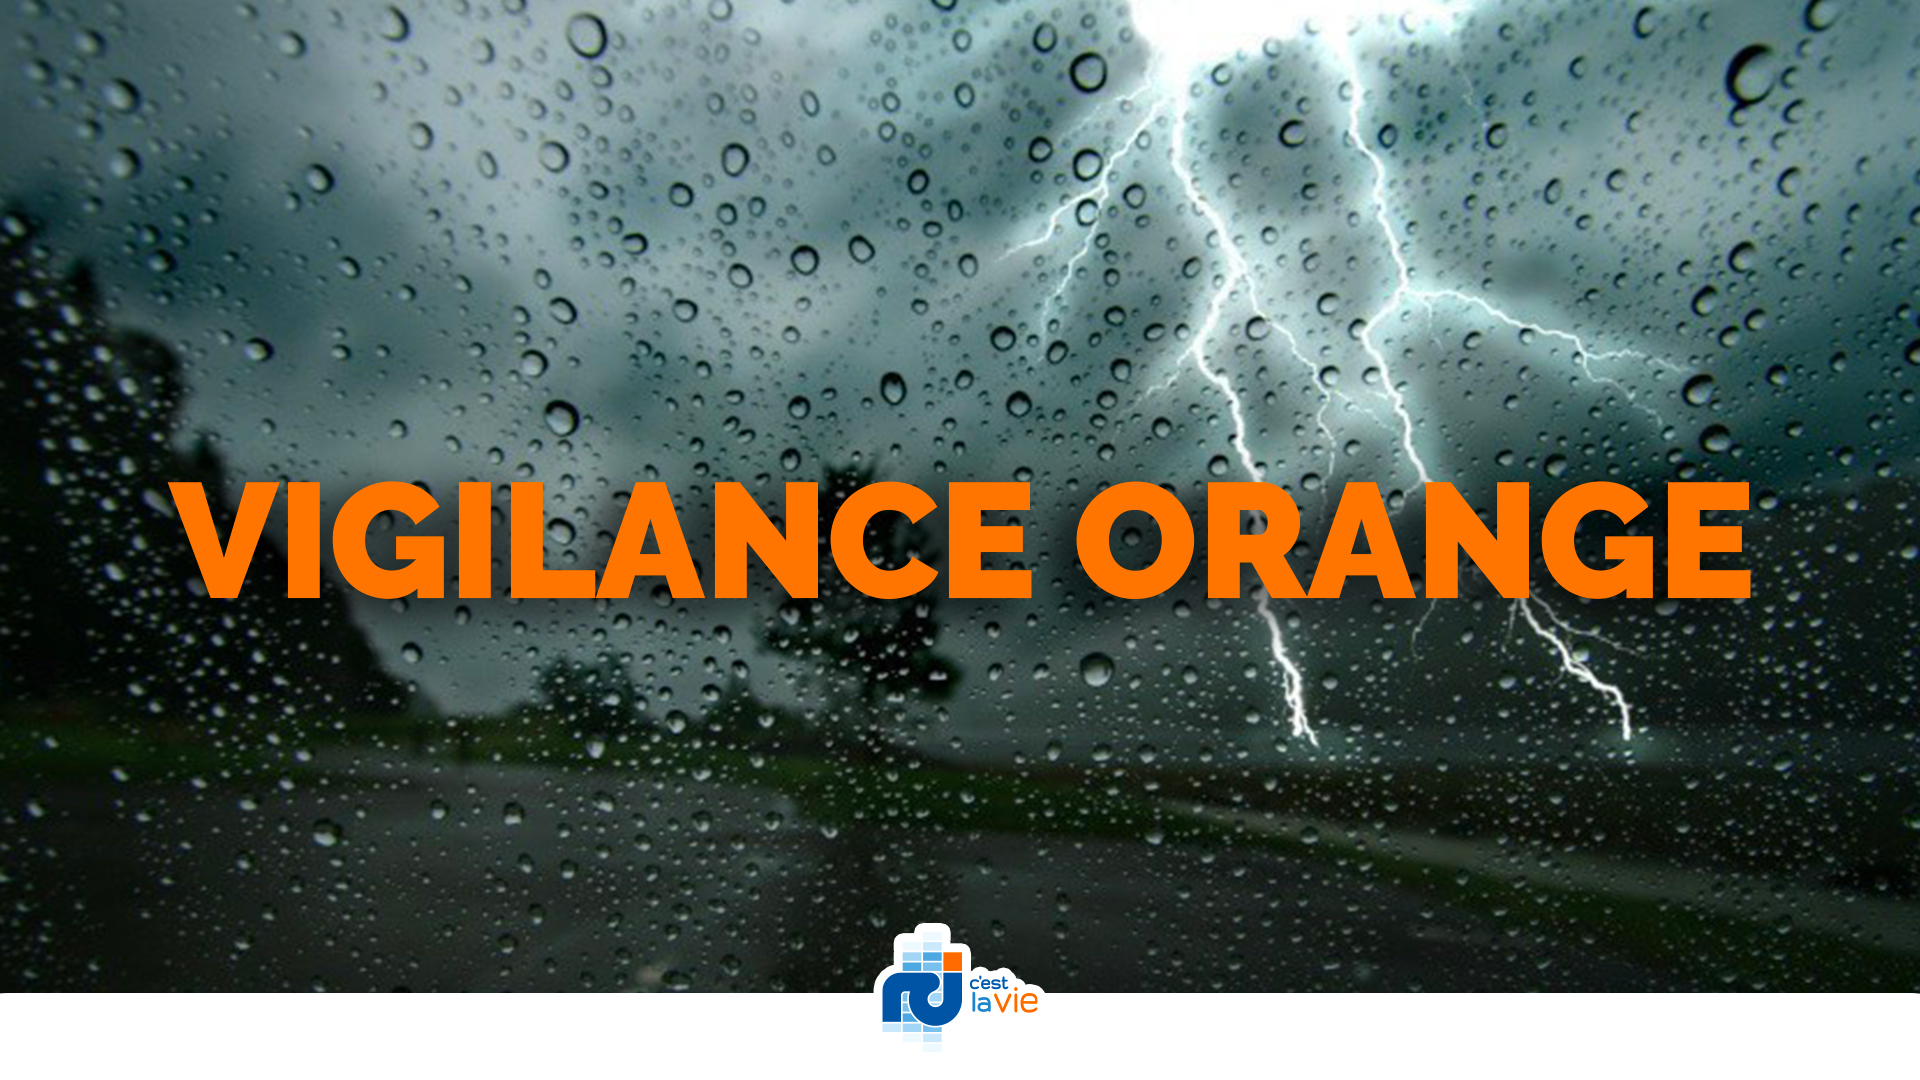     La Guadeloupe passe en vigilance orange pour la pluie

